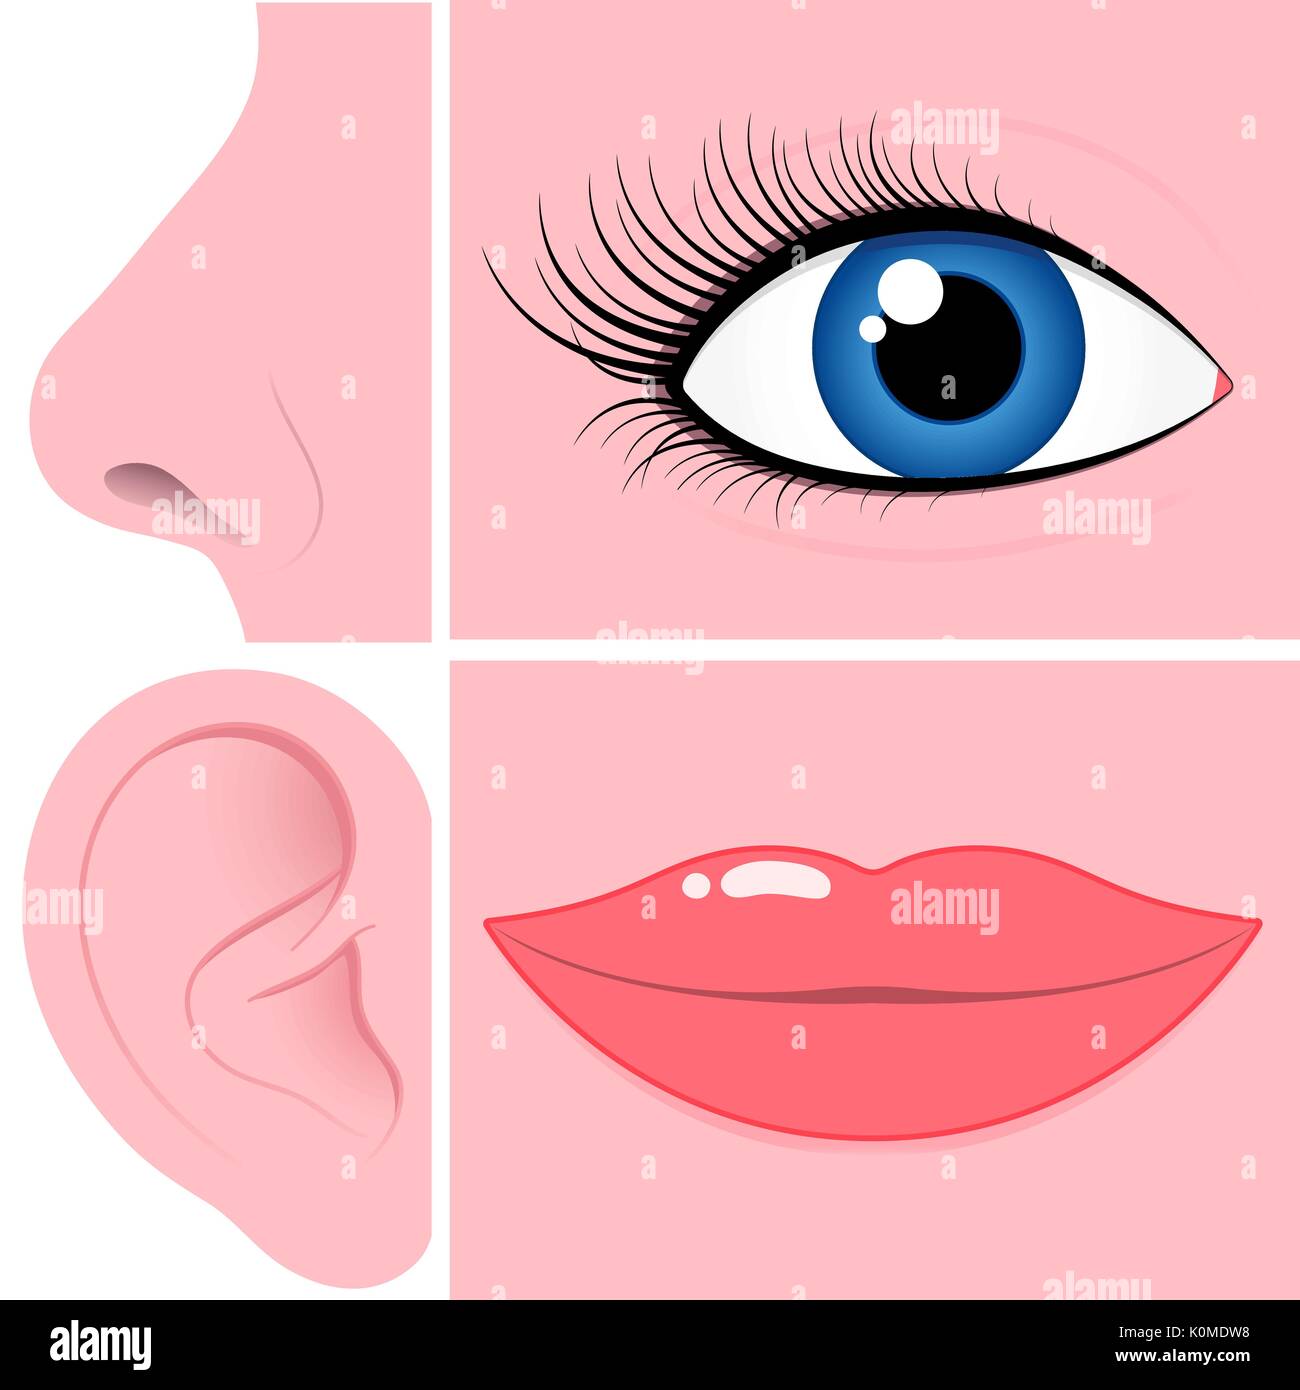 Nase, Auge, Ohr und Mund Sammlung Stock-Vektorgrafik - Alamy